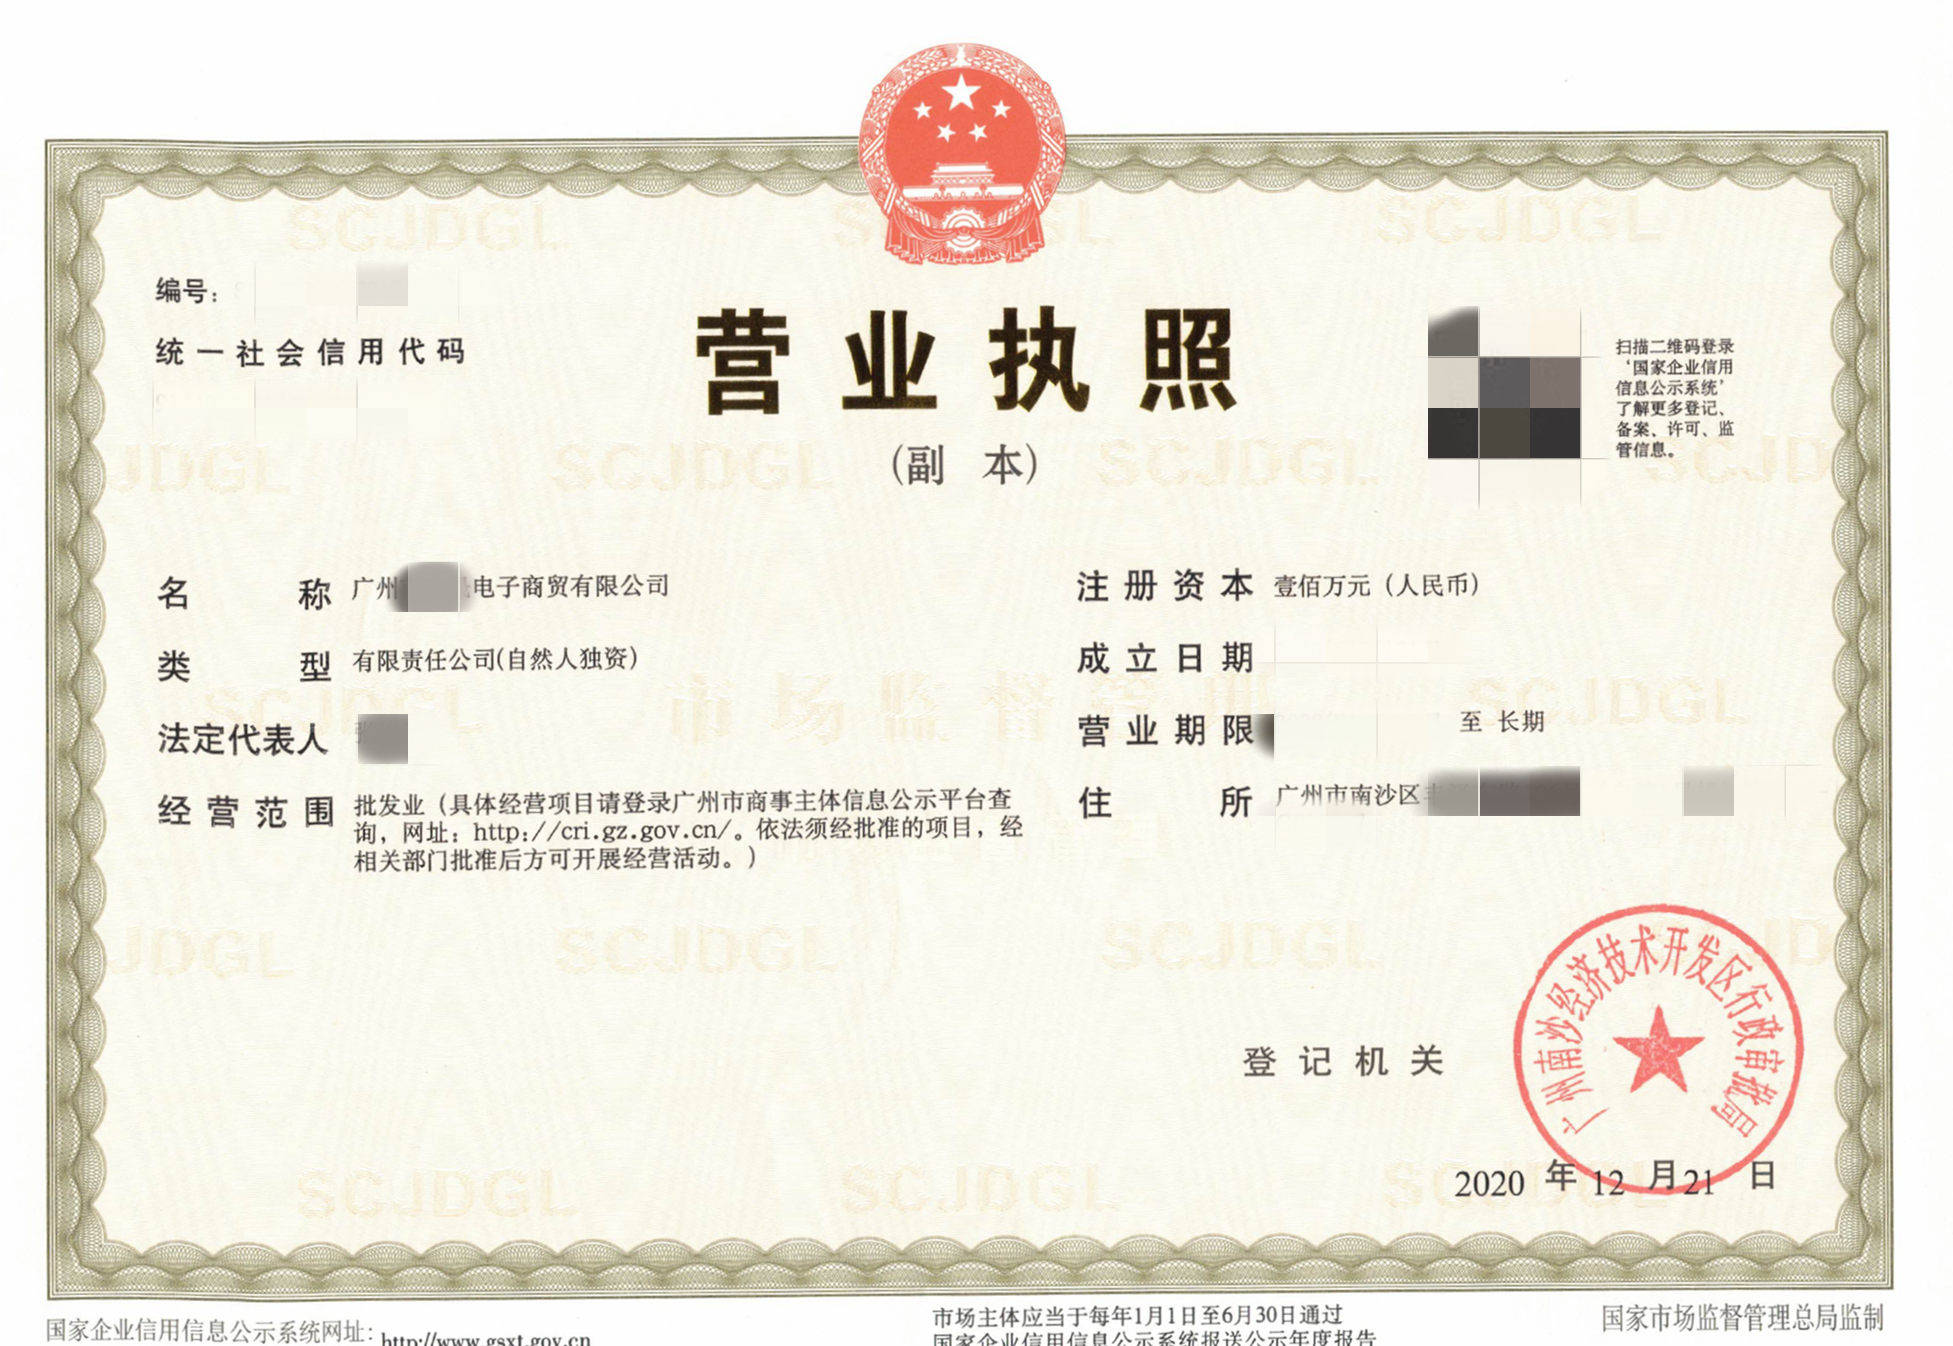 进驻速卖通需要营业执照,广州南沙2天快速注册电子商贸公司案例!